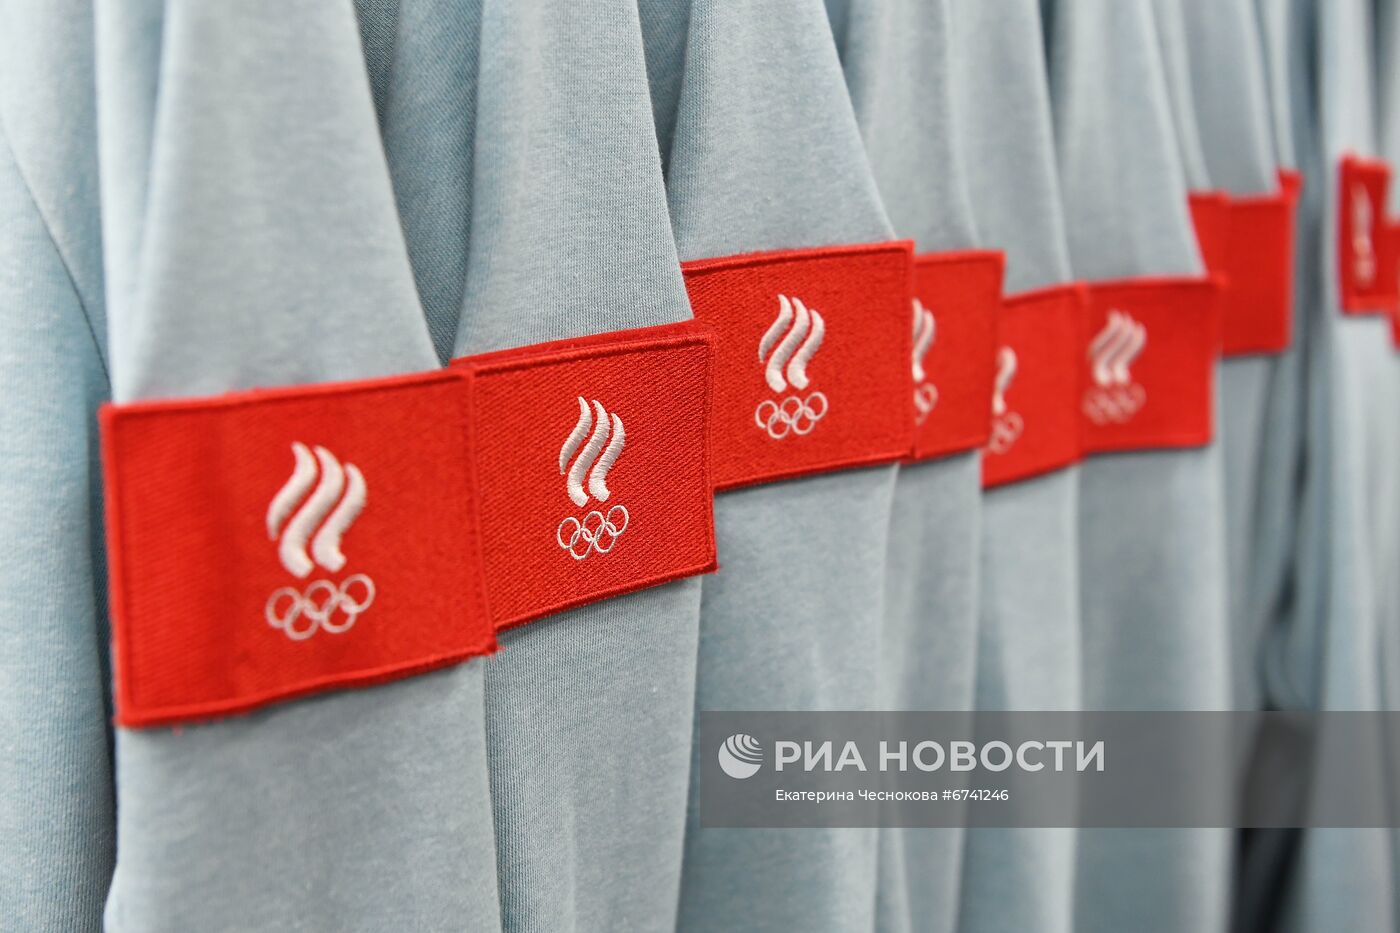 Открытие экипировочного центра Zasport для российских олимпийцев